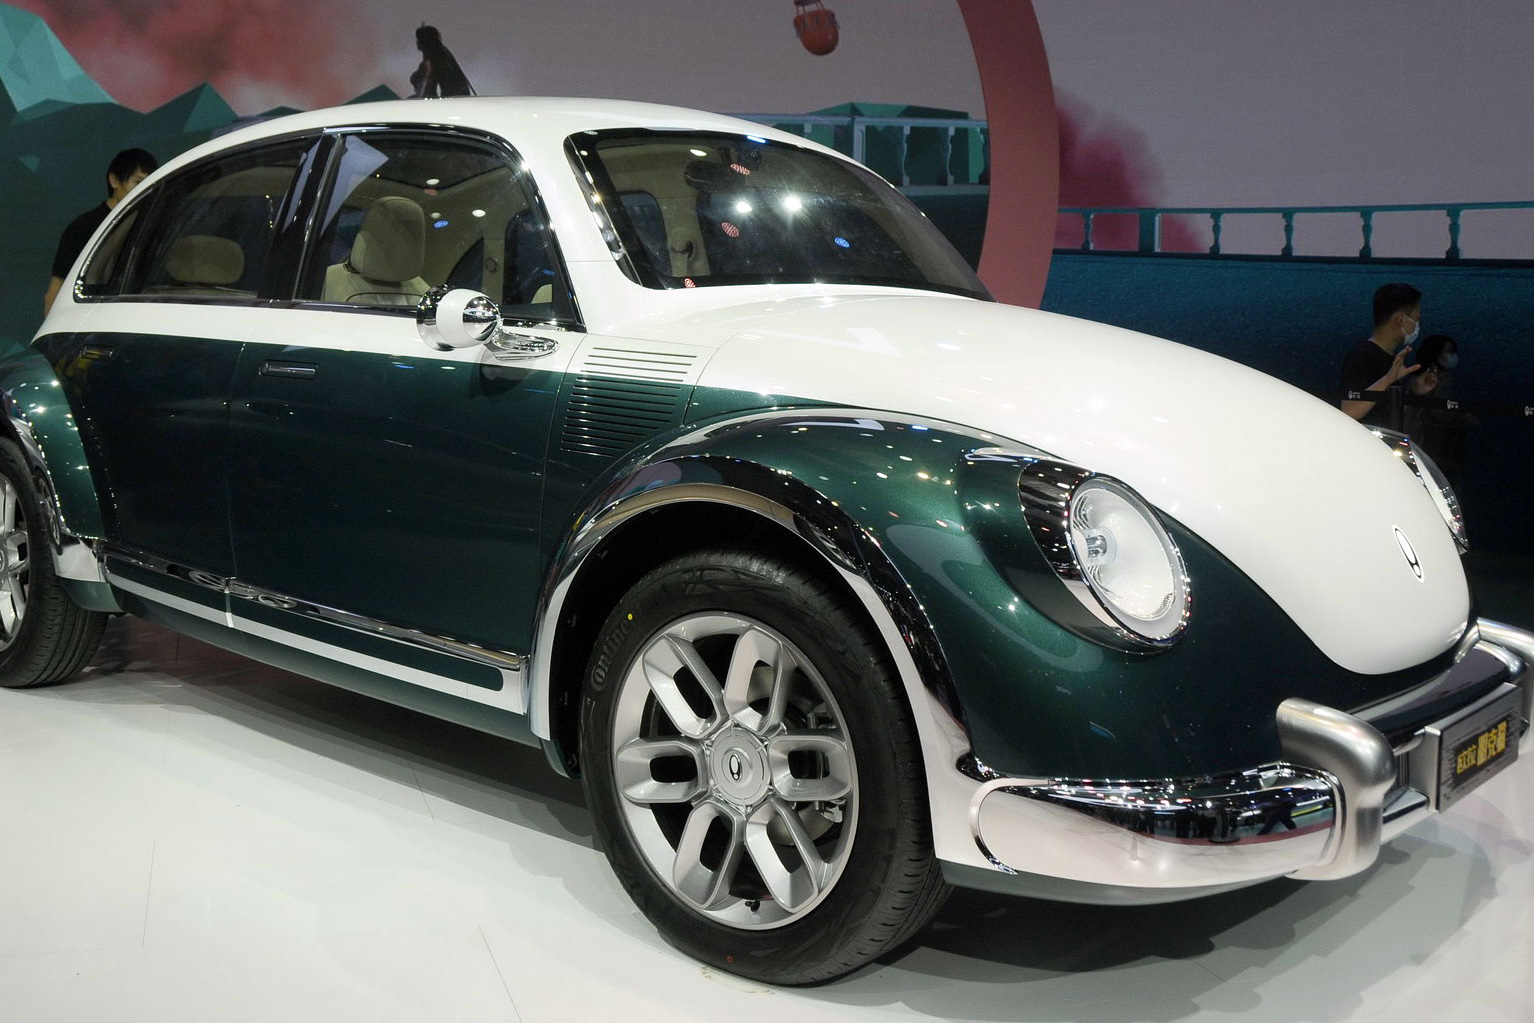 Cùng tham gia triển lãm Thượng Hải, Volkswagen bất ngờ kiện đối thủ sau khi nhìn thấy mẫu xe này